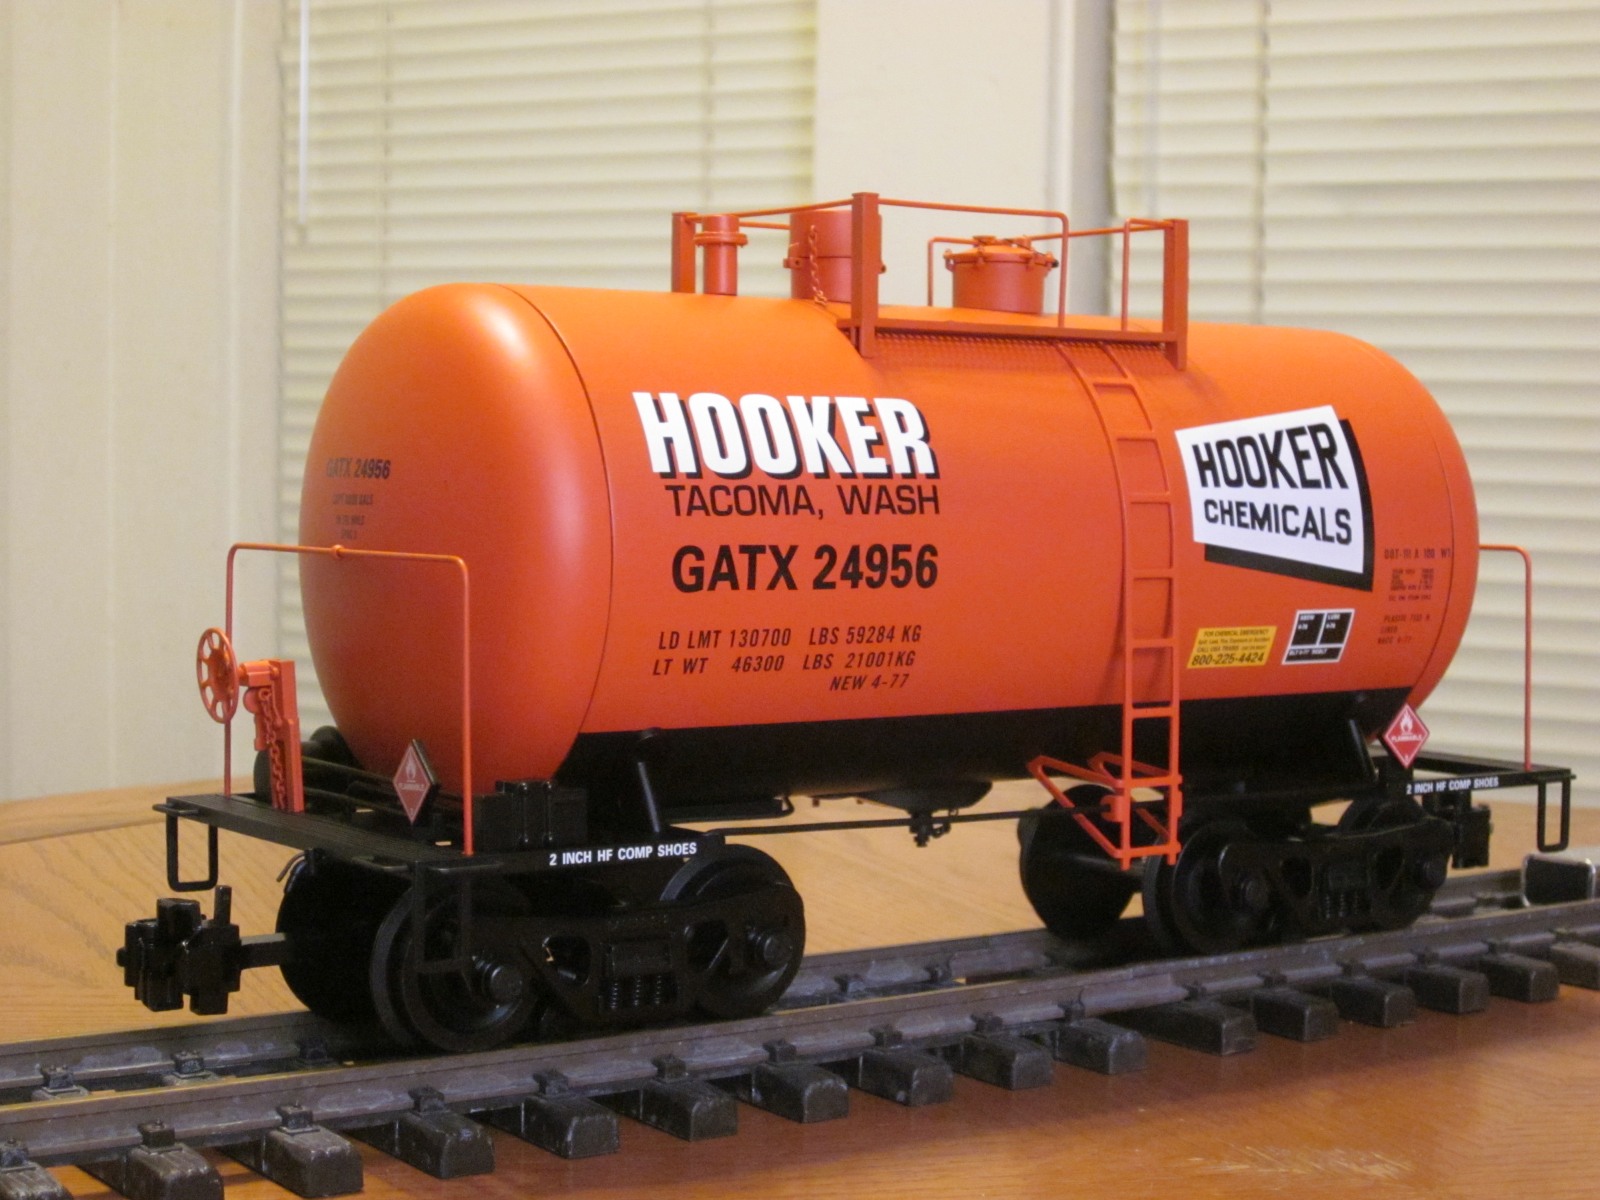 R15206 Hooker GATX 24956